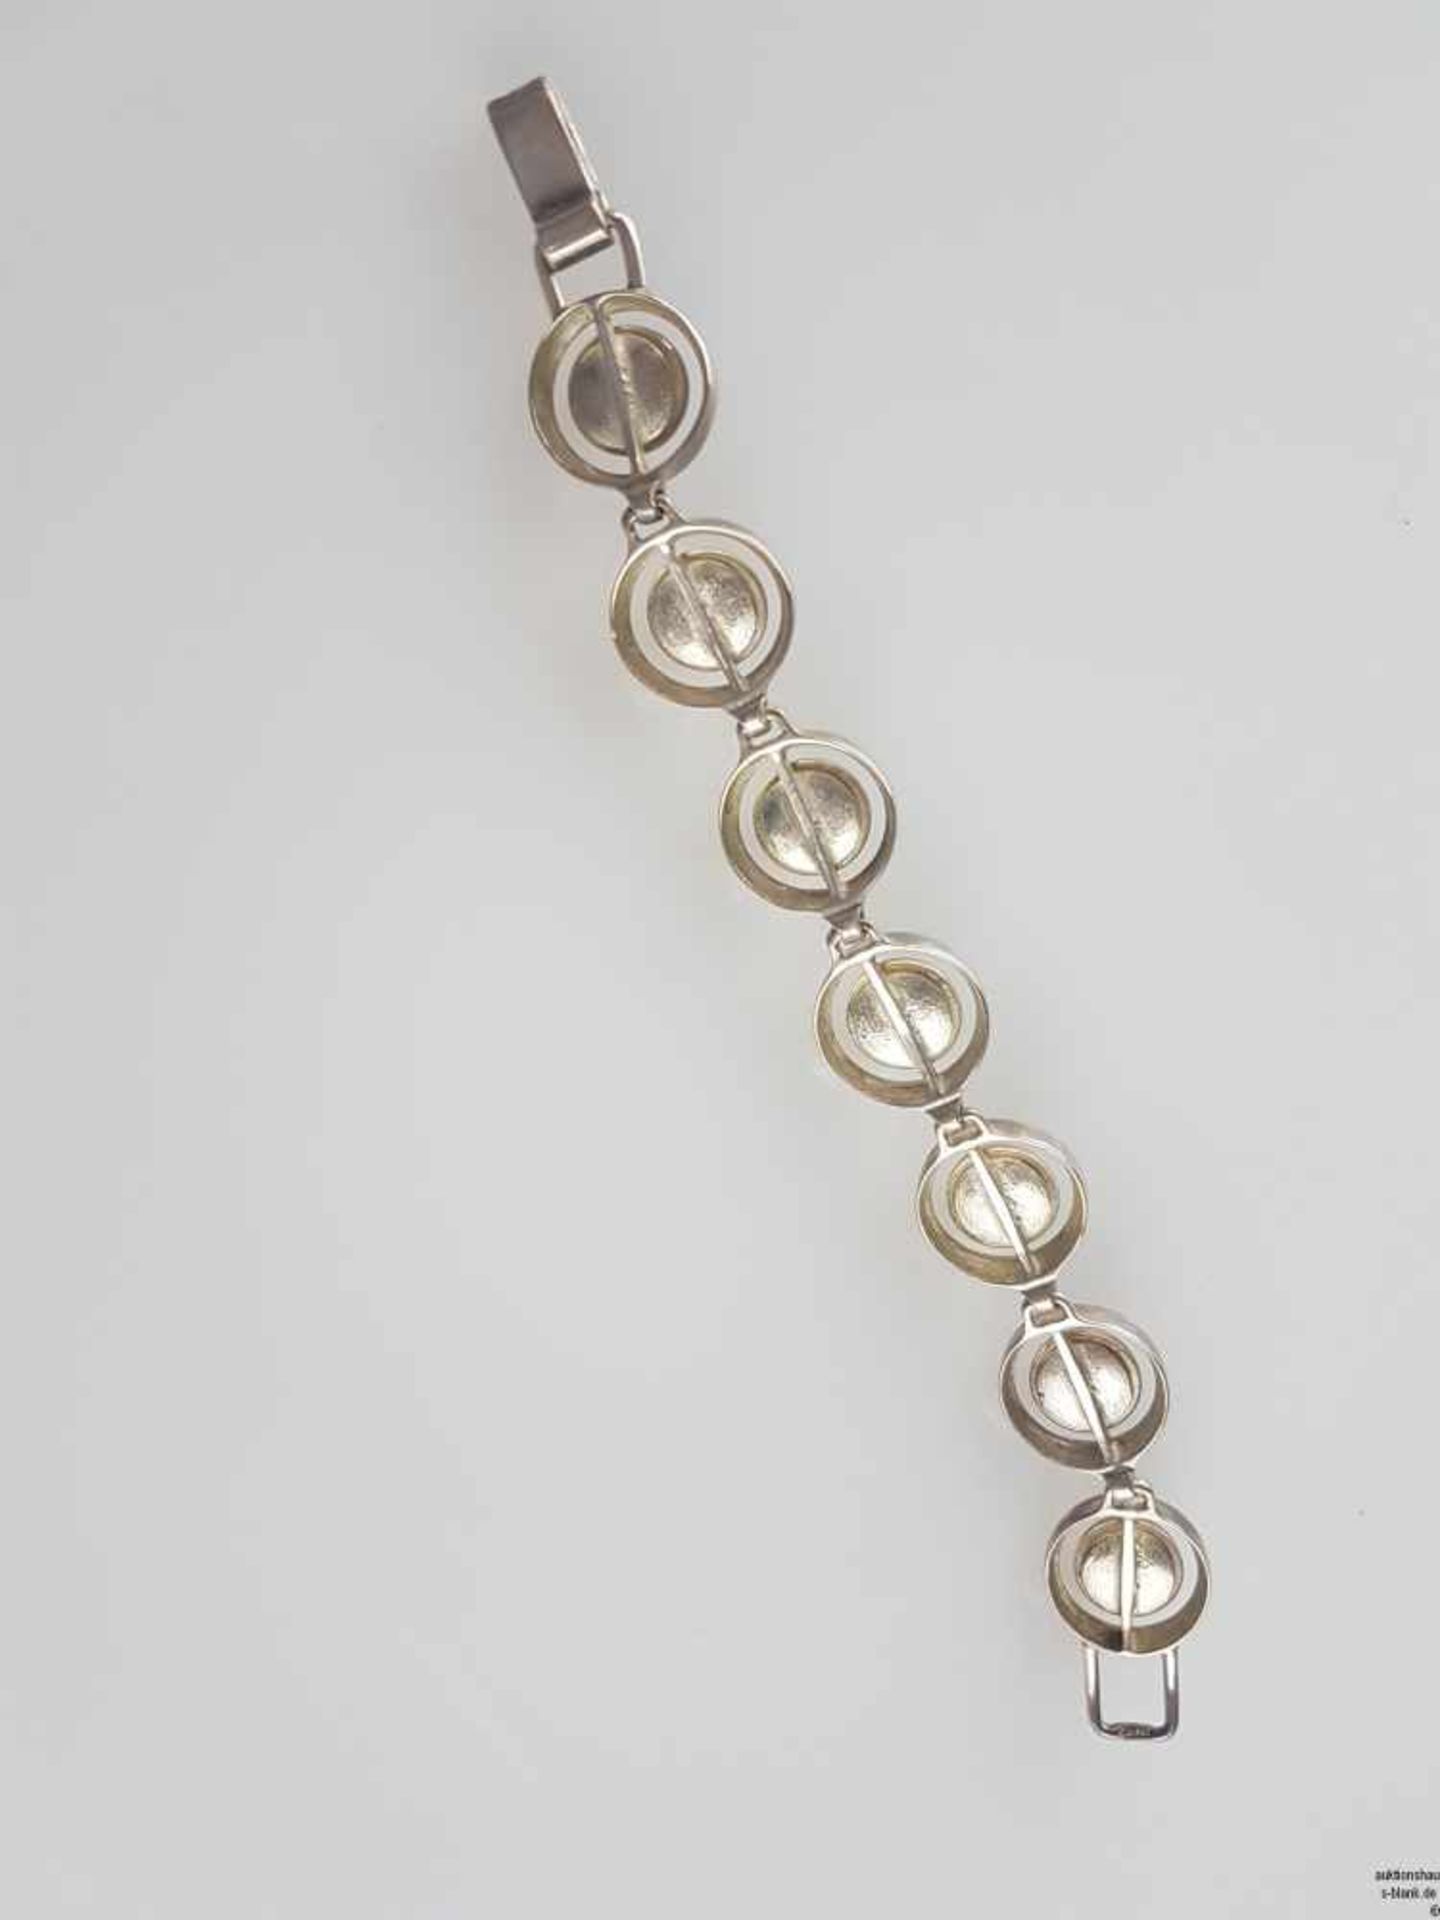 Armband mit Rosenquarzsteinen - runde Glieder mit Rosenquarz-Cabochons in Silberfassung 925, - Bild 3 aus 3